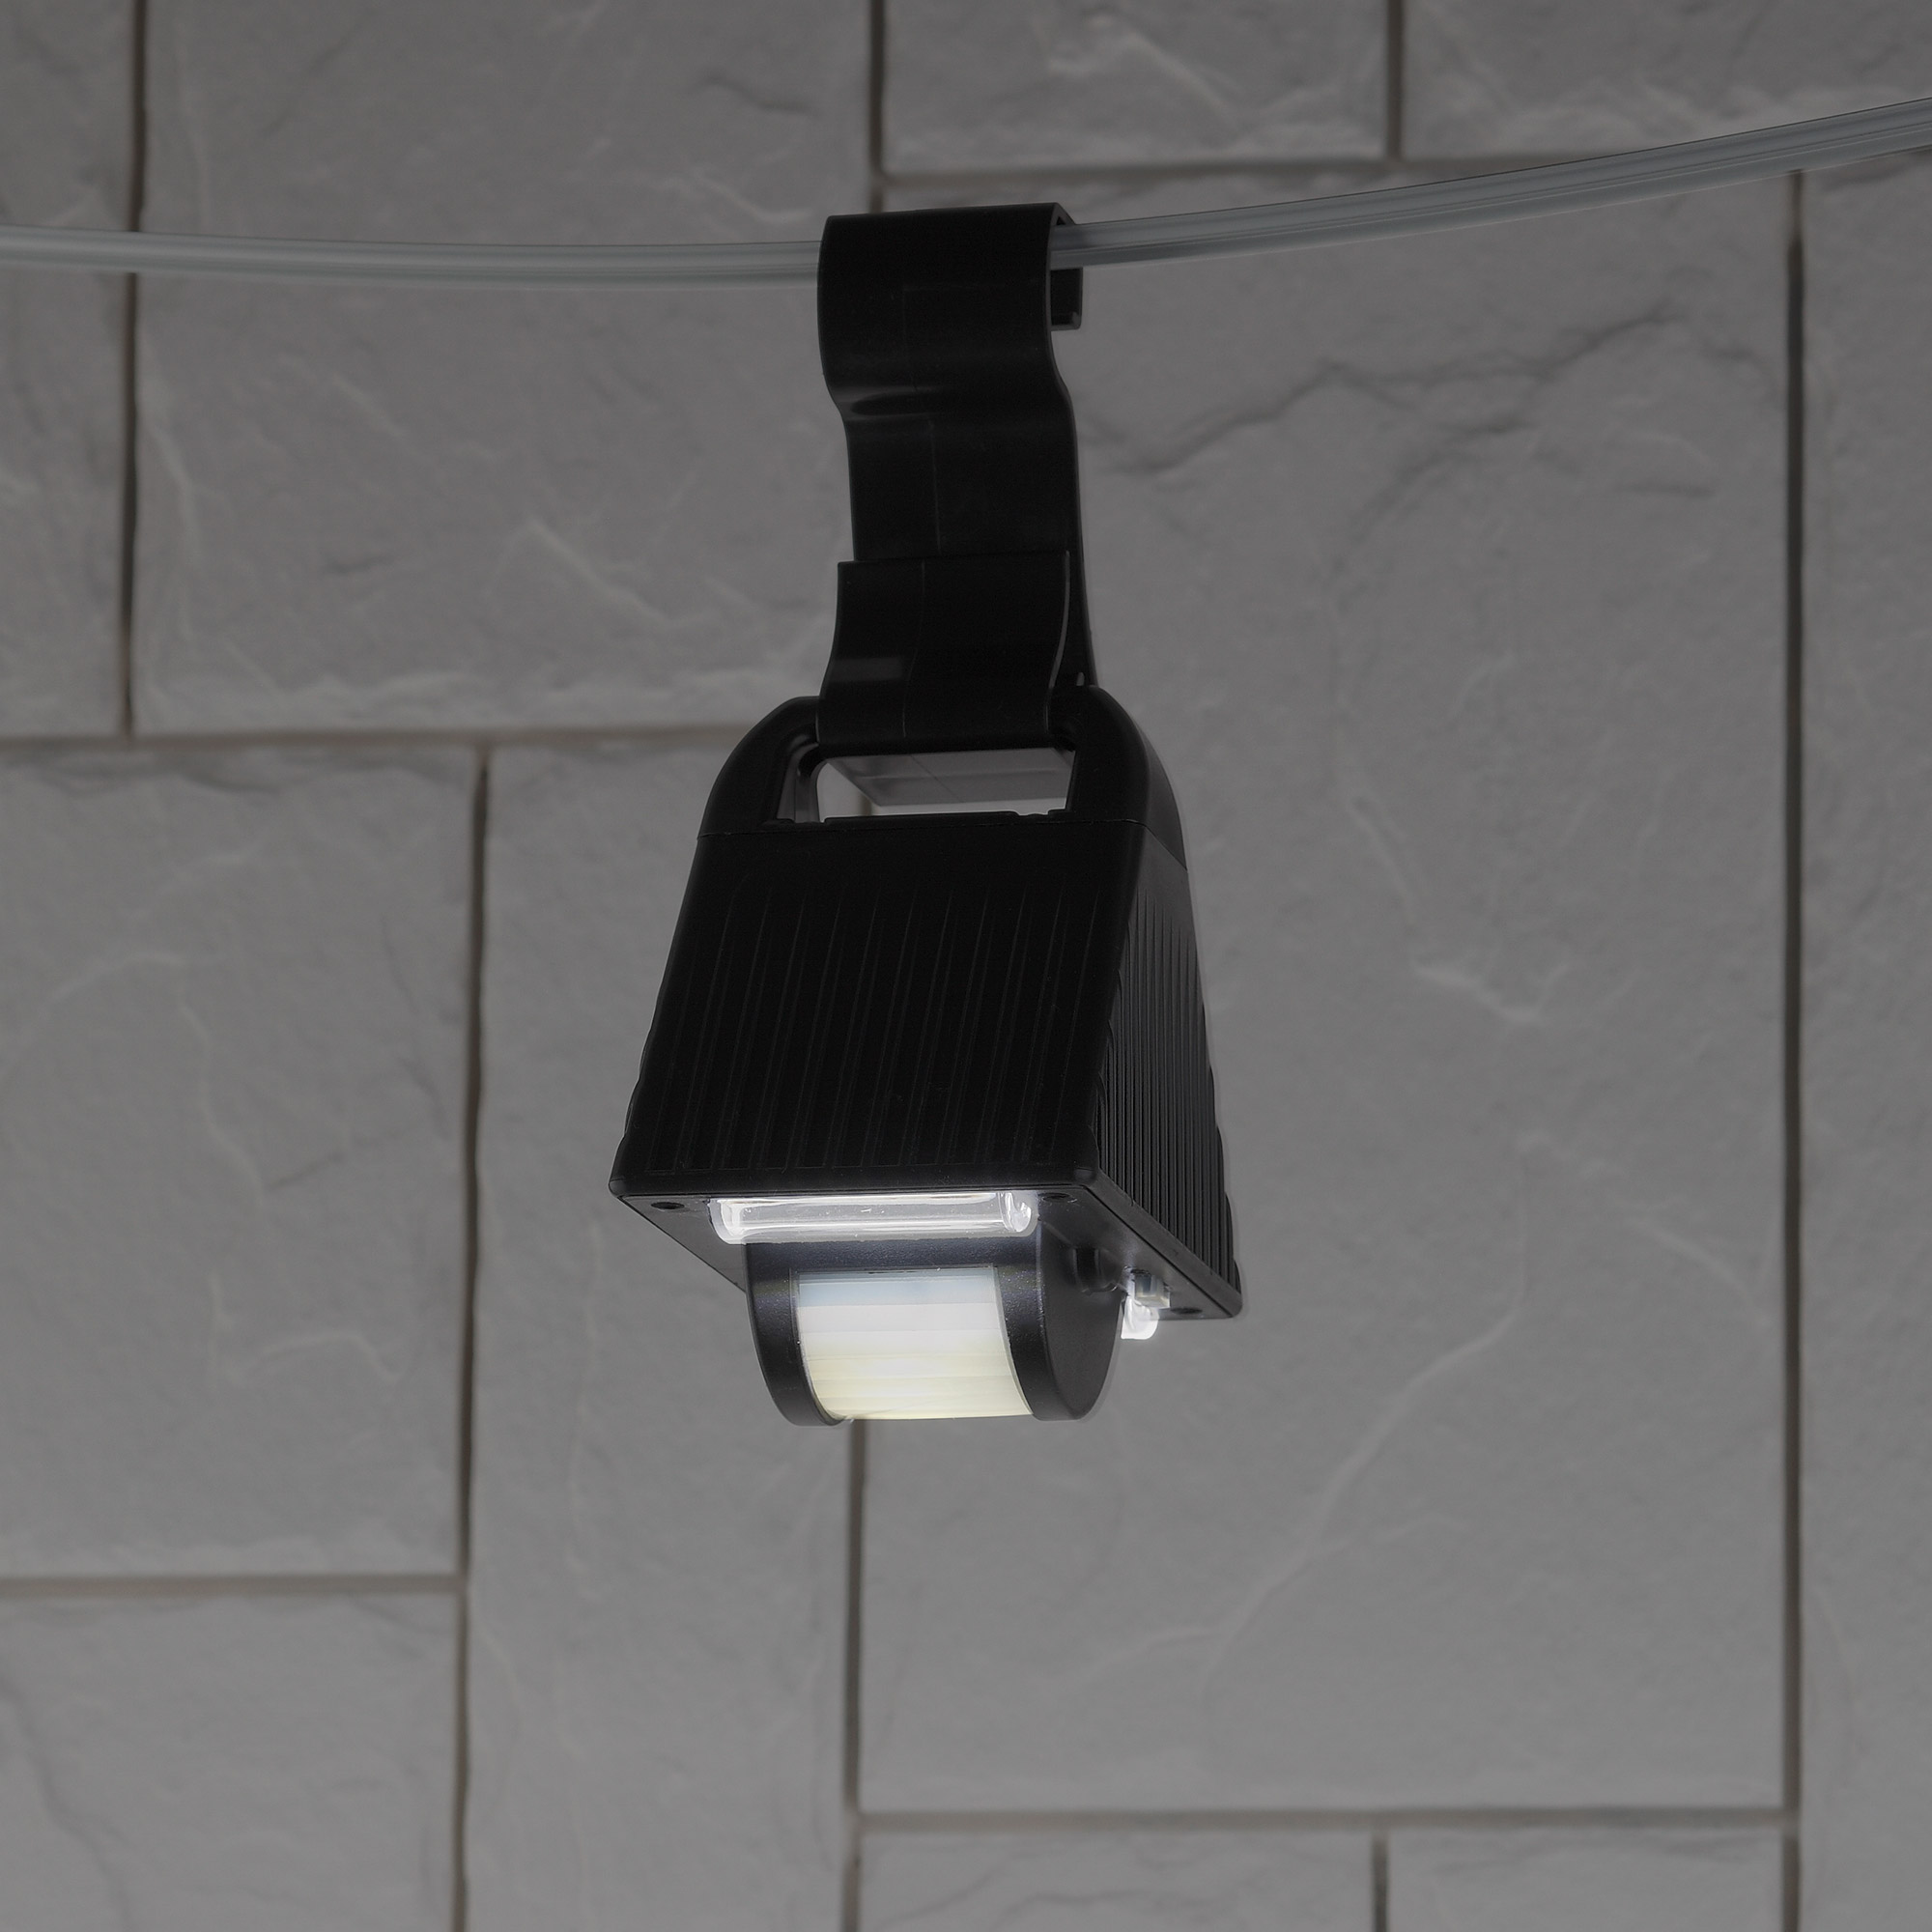 фото Erafs024-05 эра подвесной светильник с датчиком движения, на солнечной батарее, 16led, 50lm